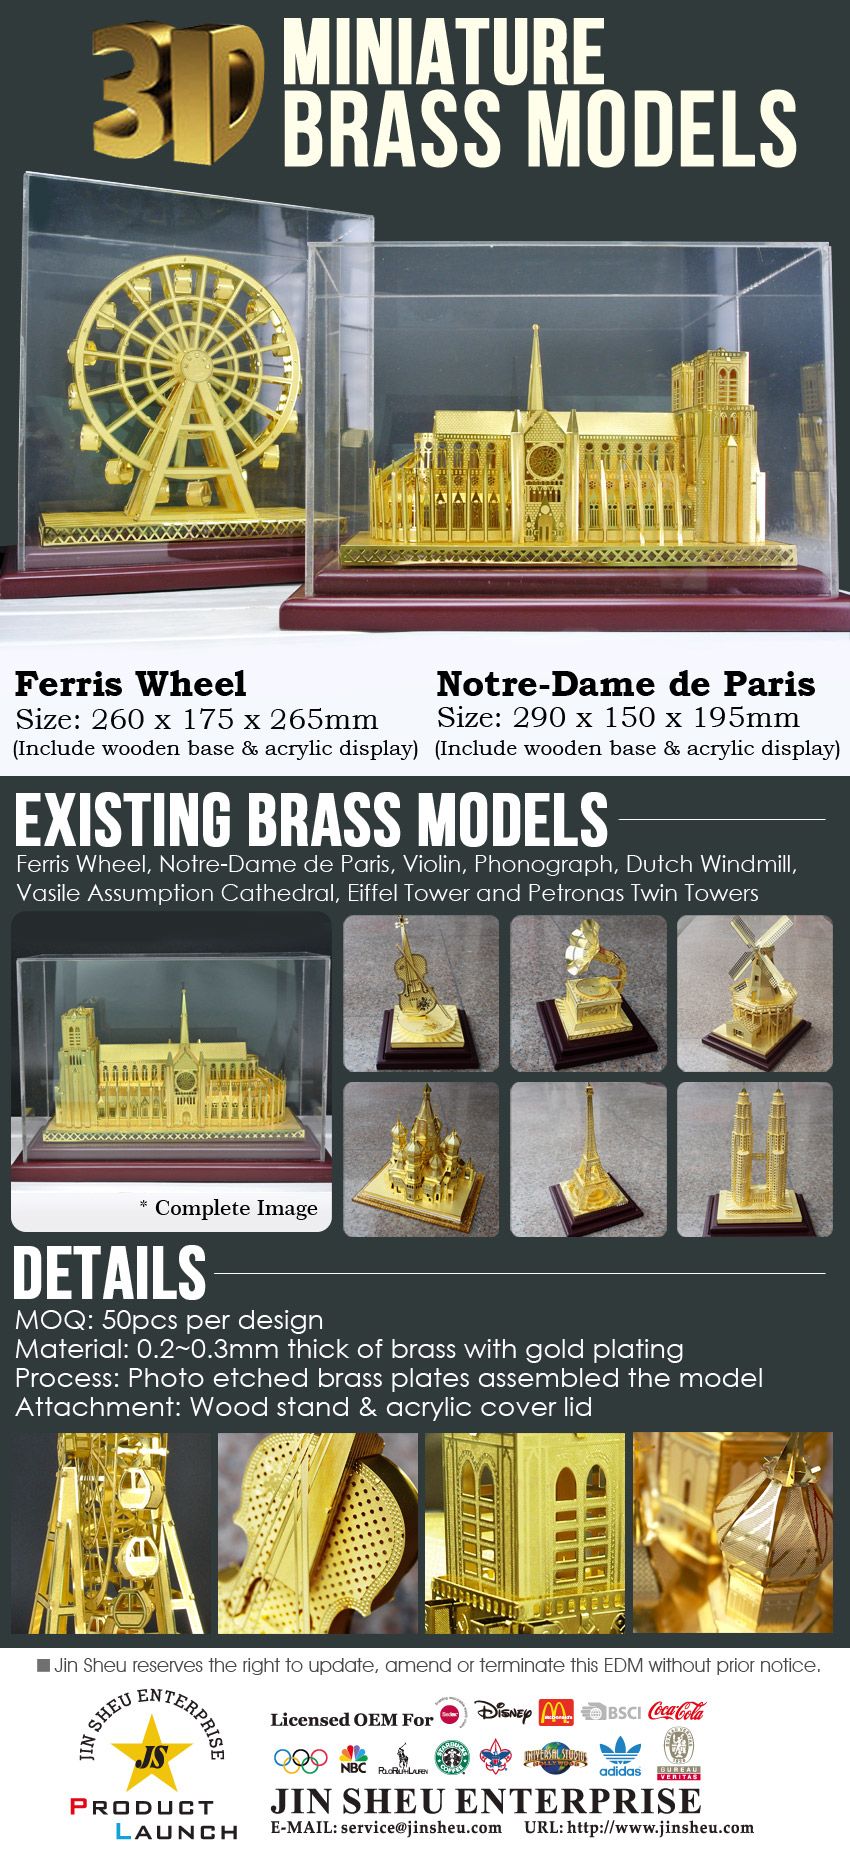 Miniaturas de modelos de latão 3D